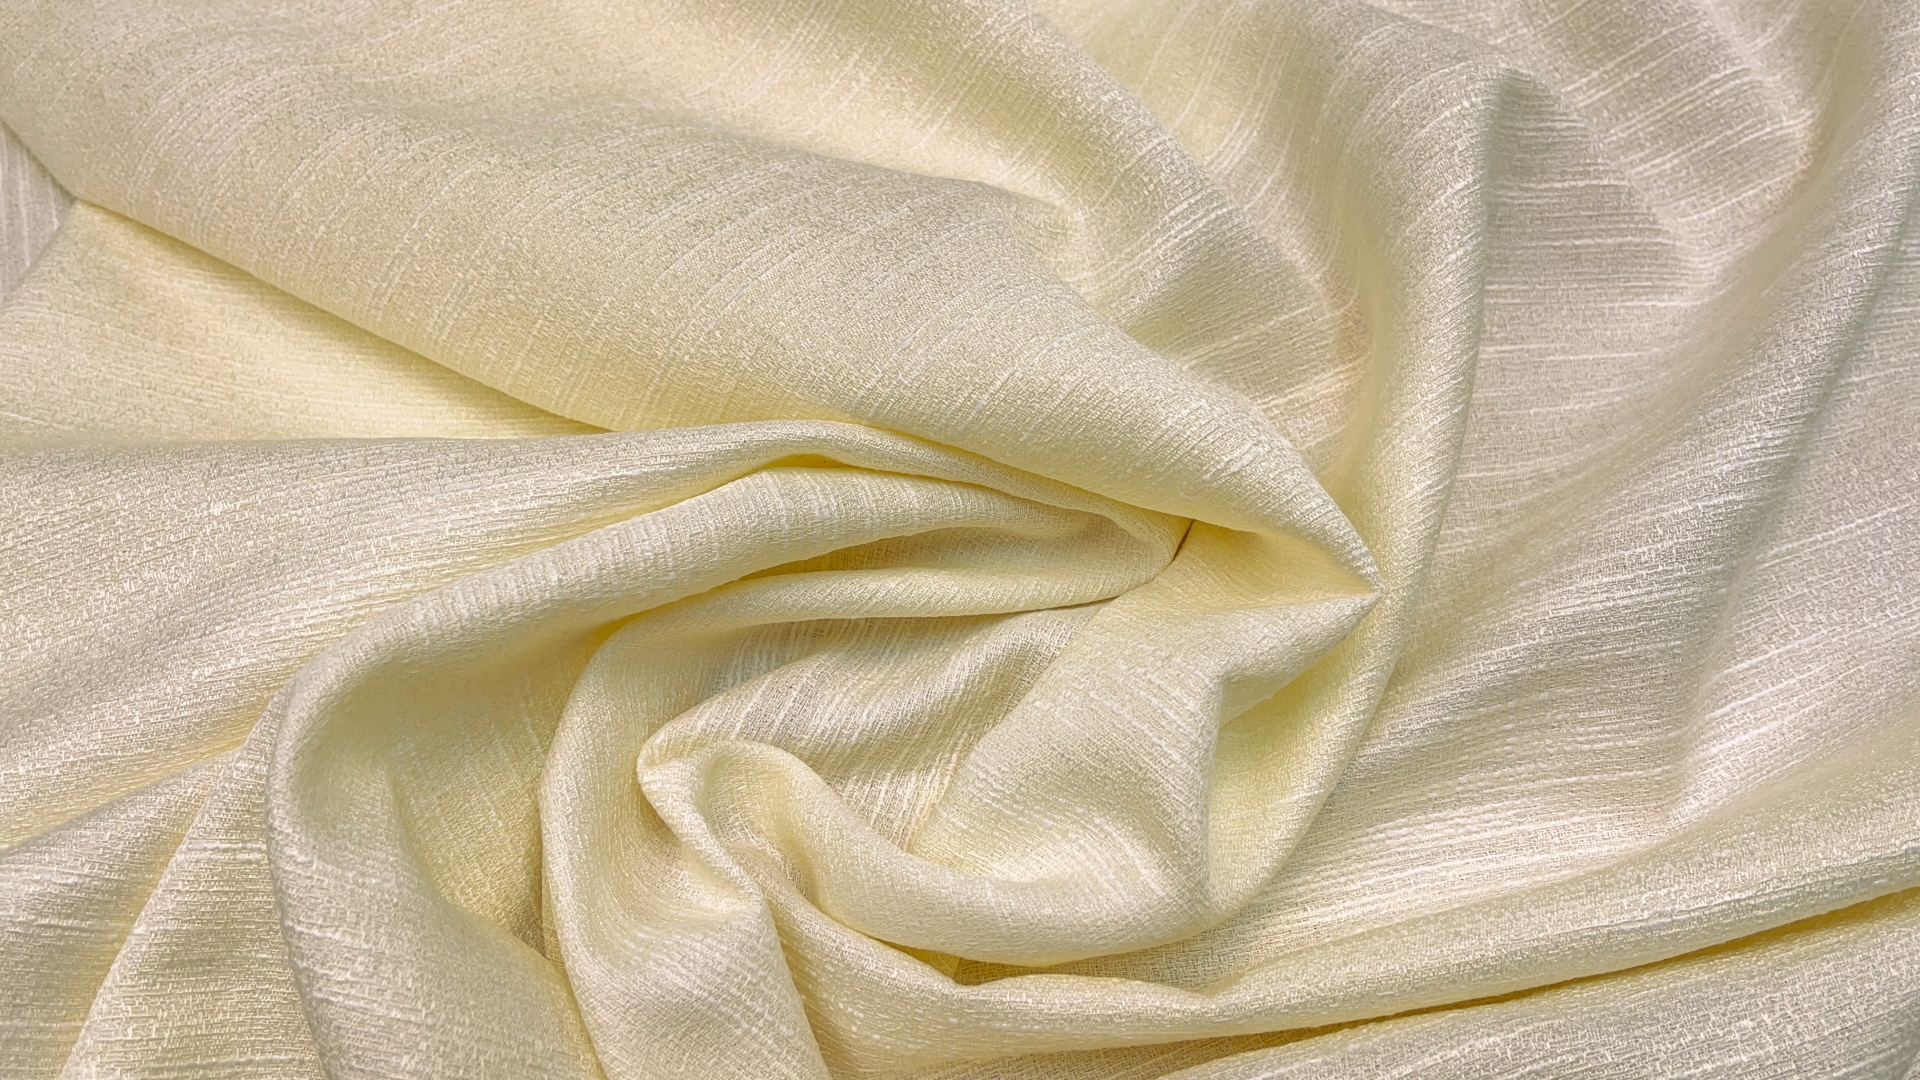 Весенне-летнее костюмное полотно твидовой выработки. Цвет светлый желтый. Имеет красивый лёгкий отлив. Полотно мягкое и пластичное по характеру, для платья-футляра или весеннего костюма. Не прозрачное, можно шить без подкладки.